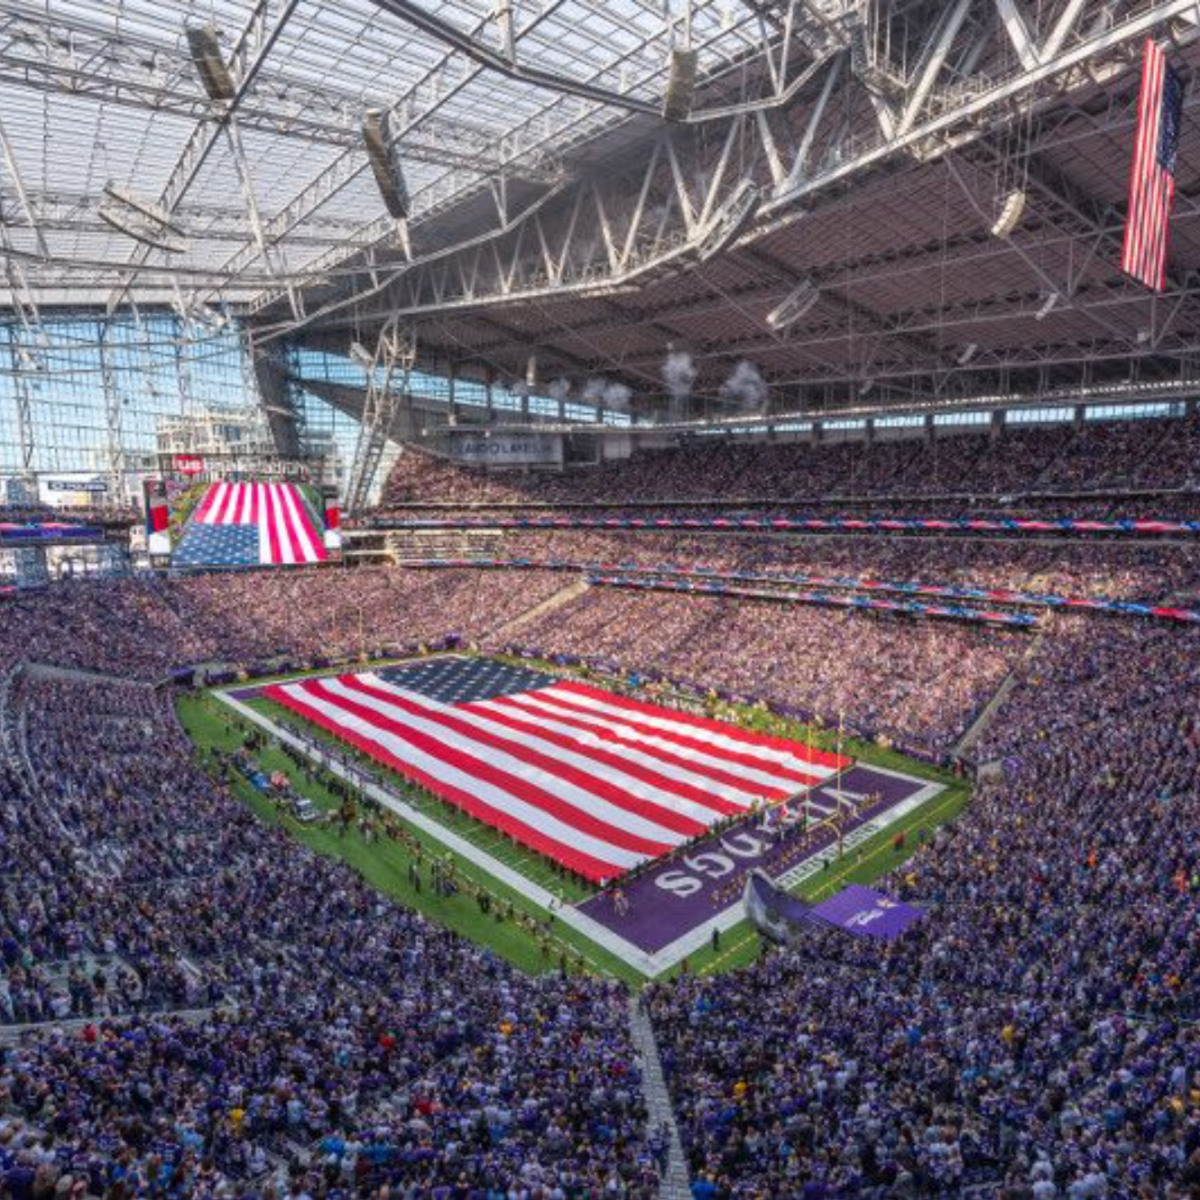 US Bank Stadium hiring 500 people to work Vikings games, concerts